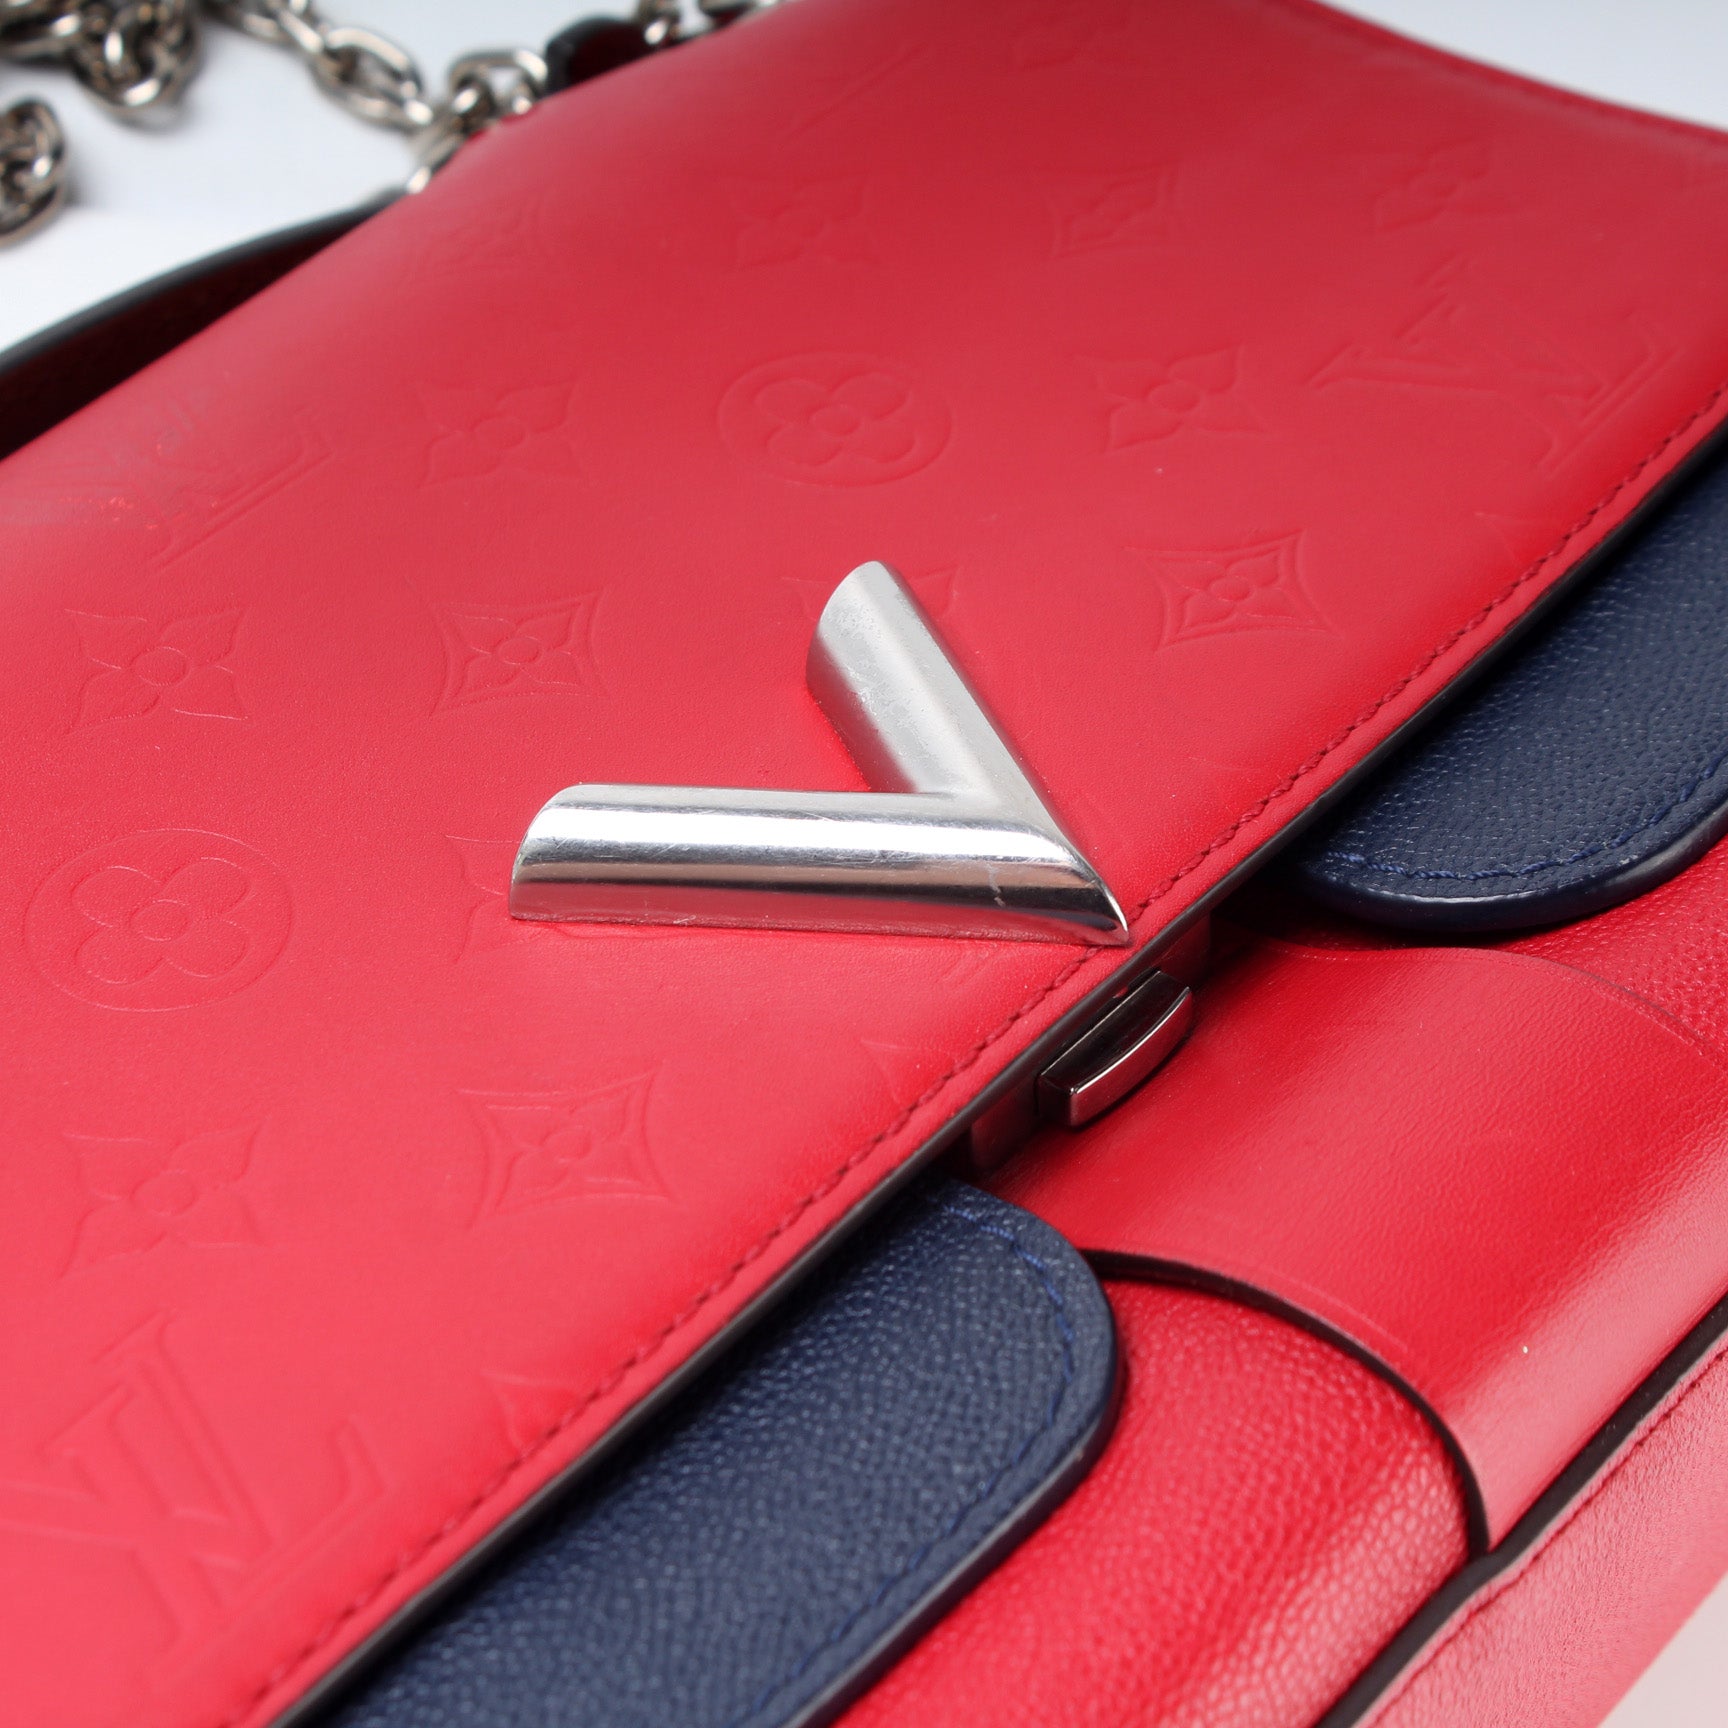 Very Chain Bag Cuir – Keeks Designer Handbags